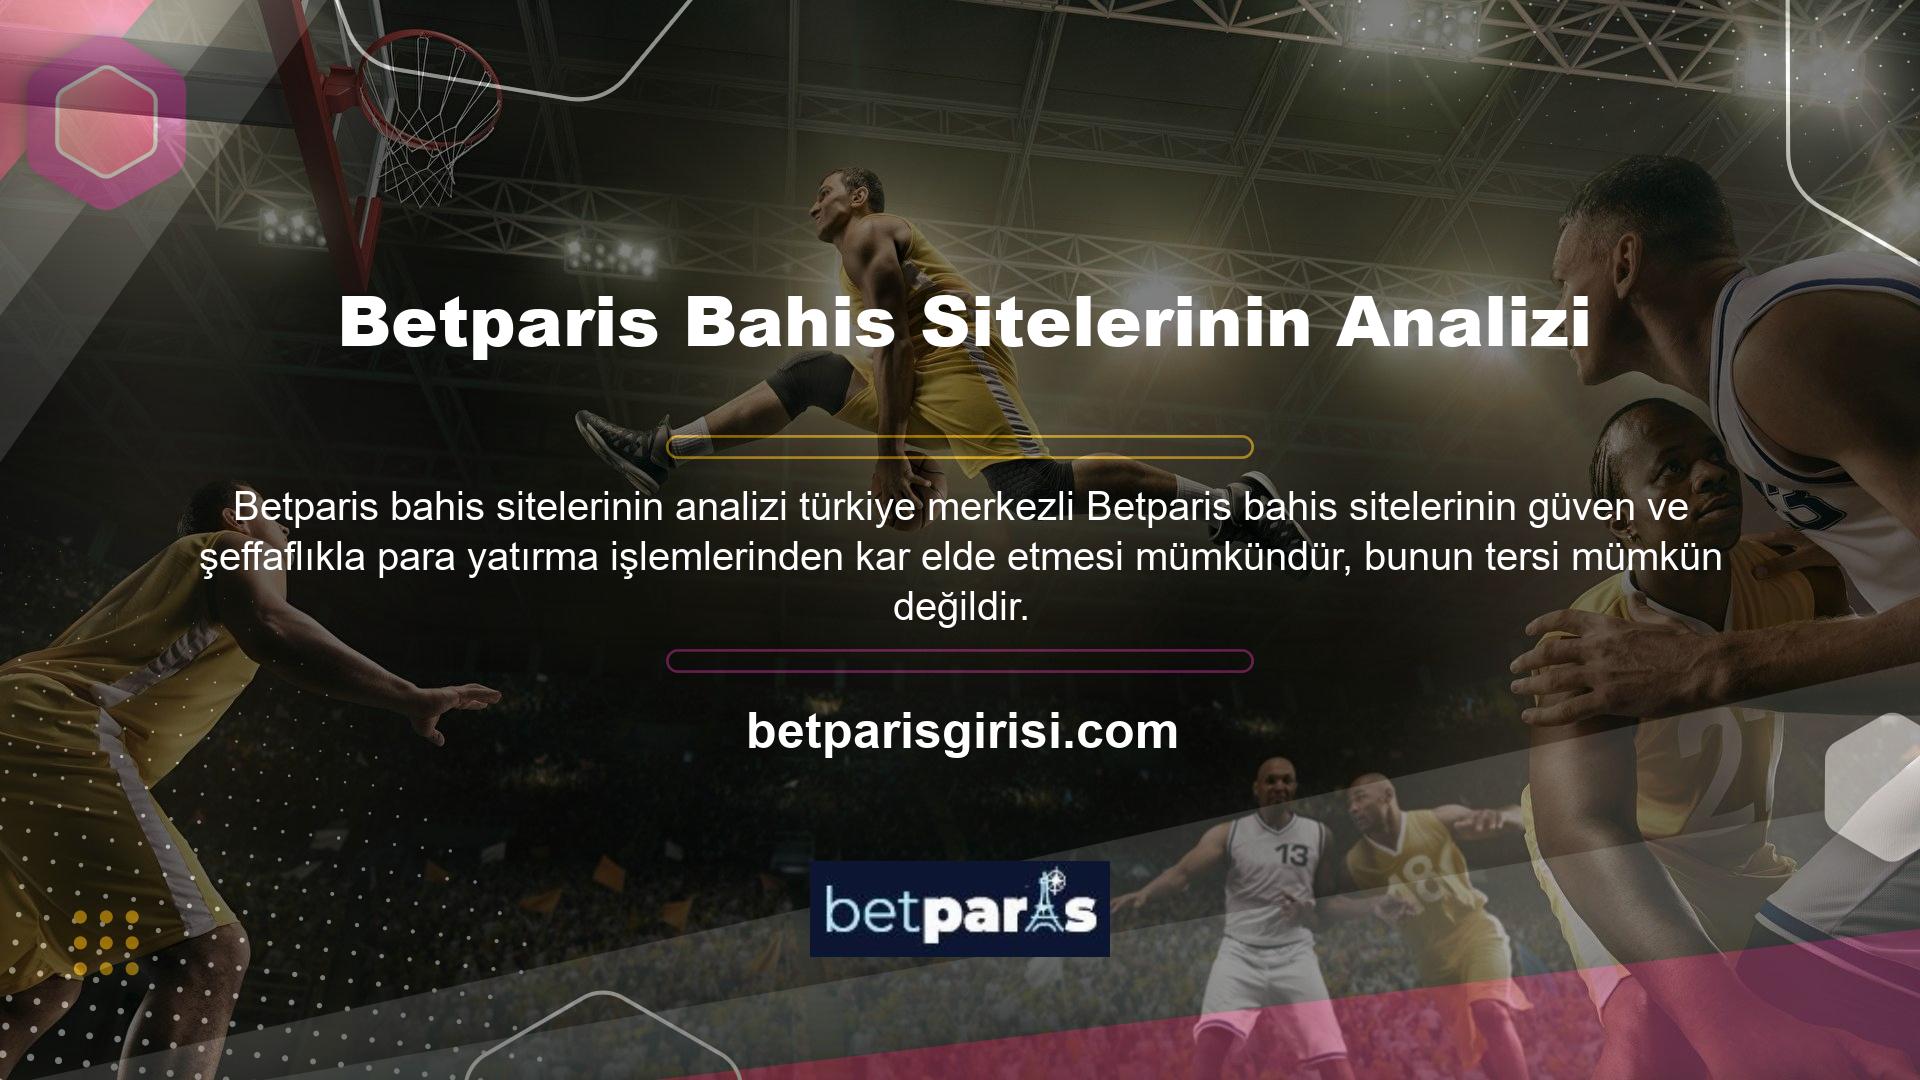 Betparis, Türkiye pazarında çevrimiçi hizmet sunan birçok yabancı casino sitesi arasında en güvenilir ve güvenilir olanlardan biridir